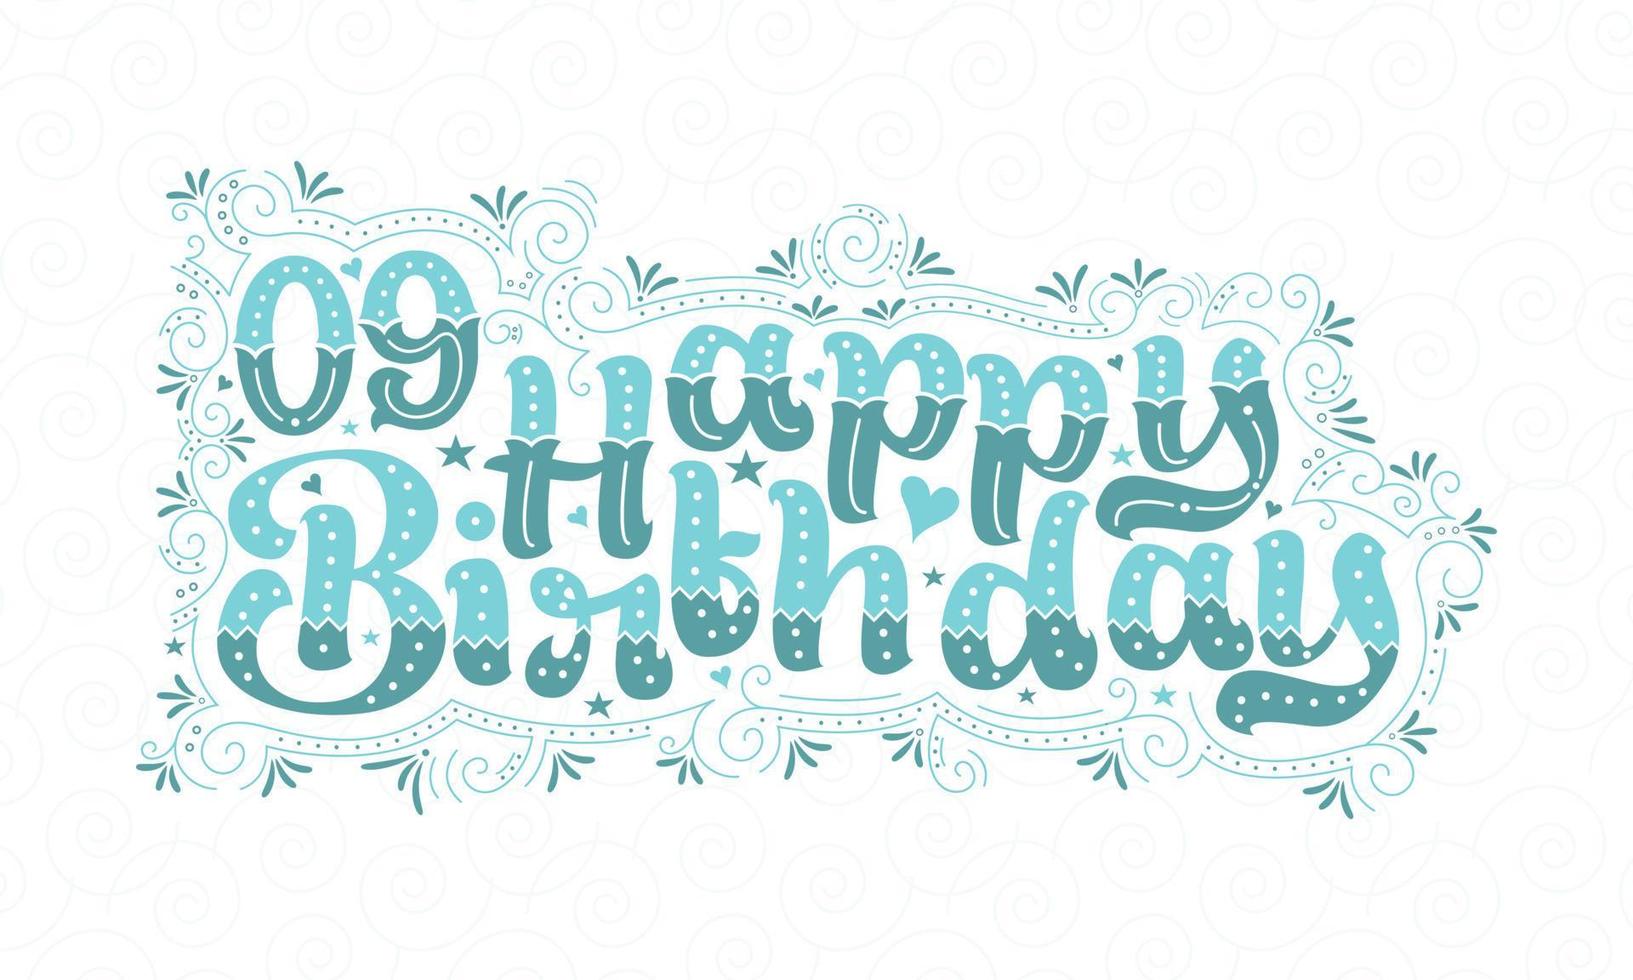 9e gelukkige verjaardag belettering, 9 jaar verjaardag mooie typografie design met aqua stippen, lijnen en bladeren. vector